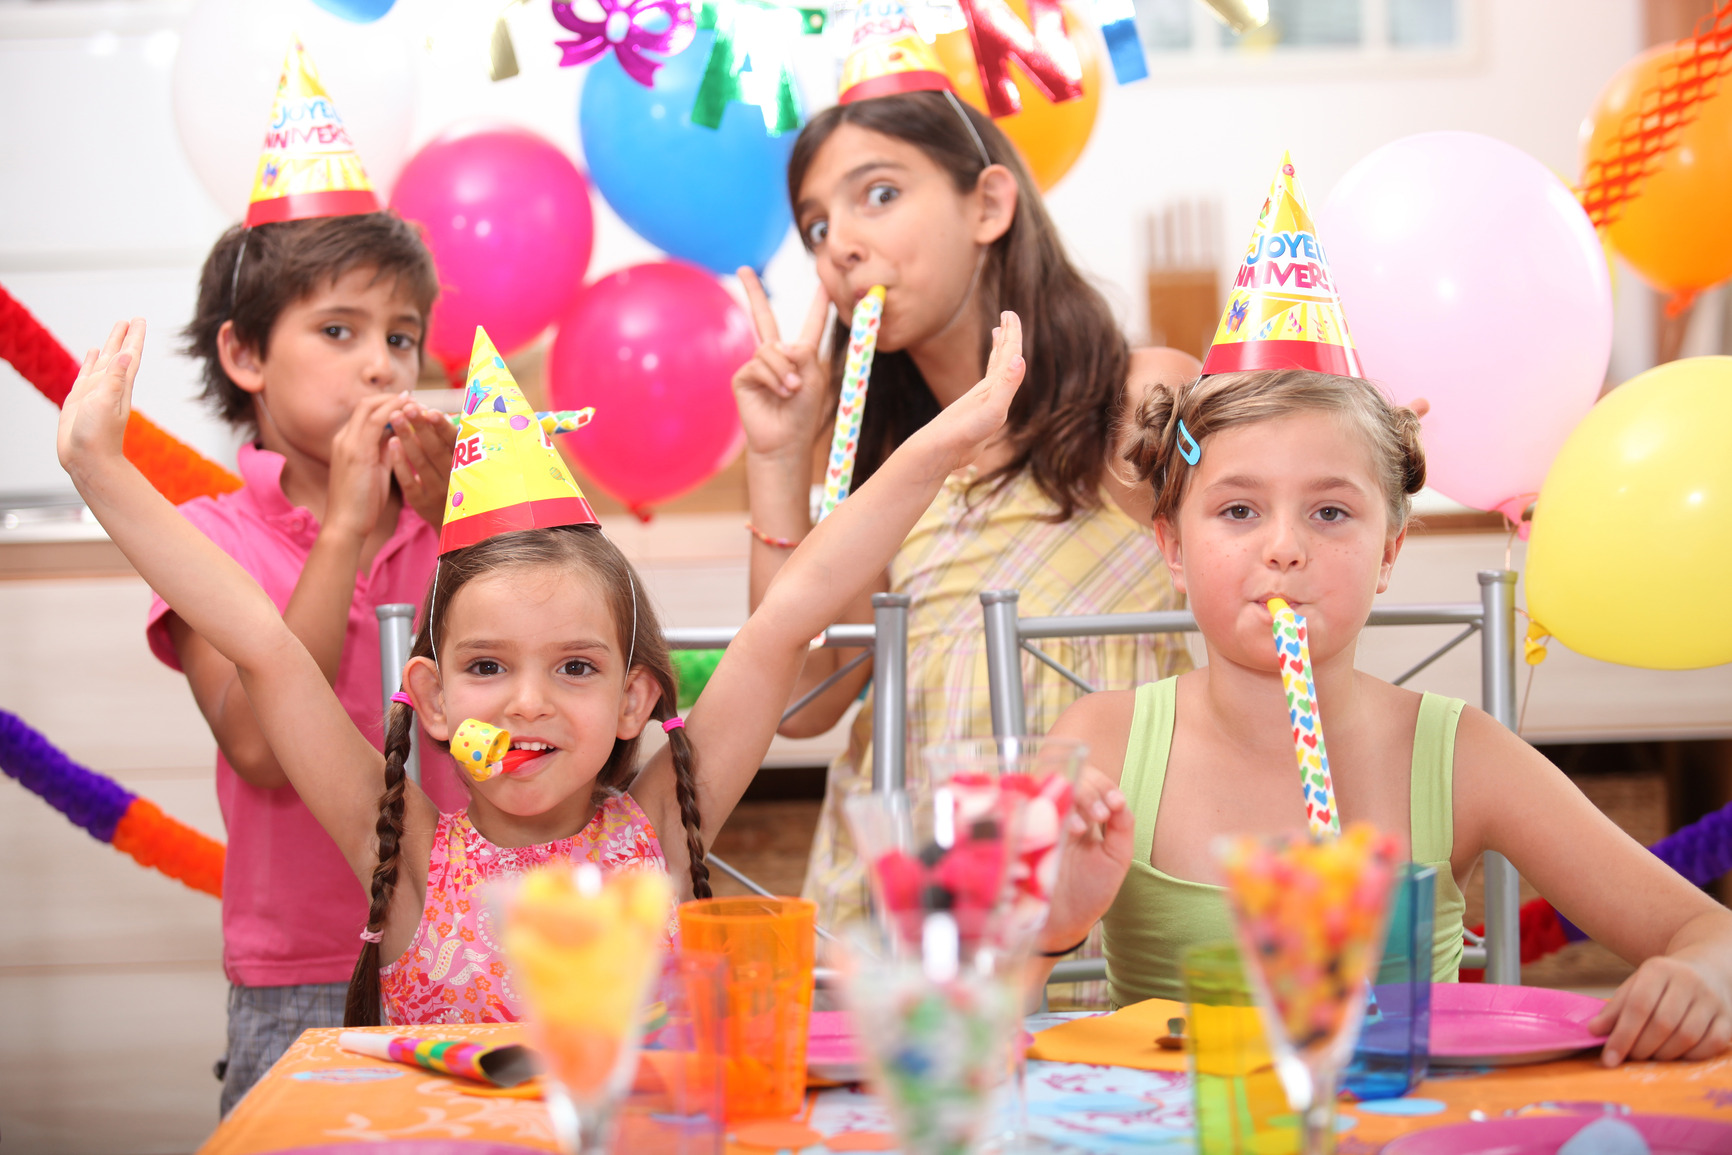 Конкурсы на день рождения подростка: смешные, веселые и интересные